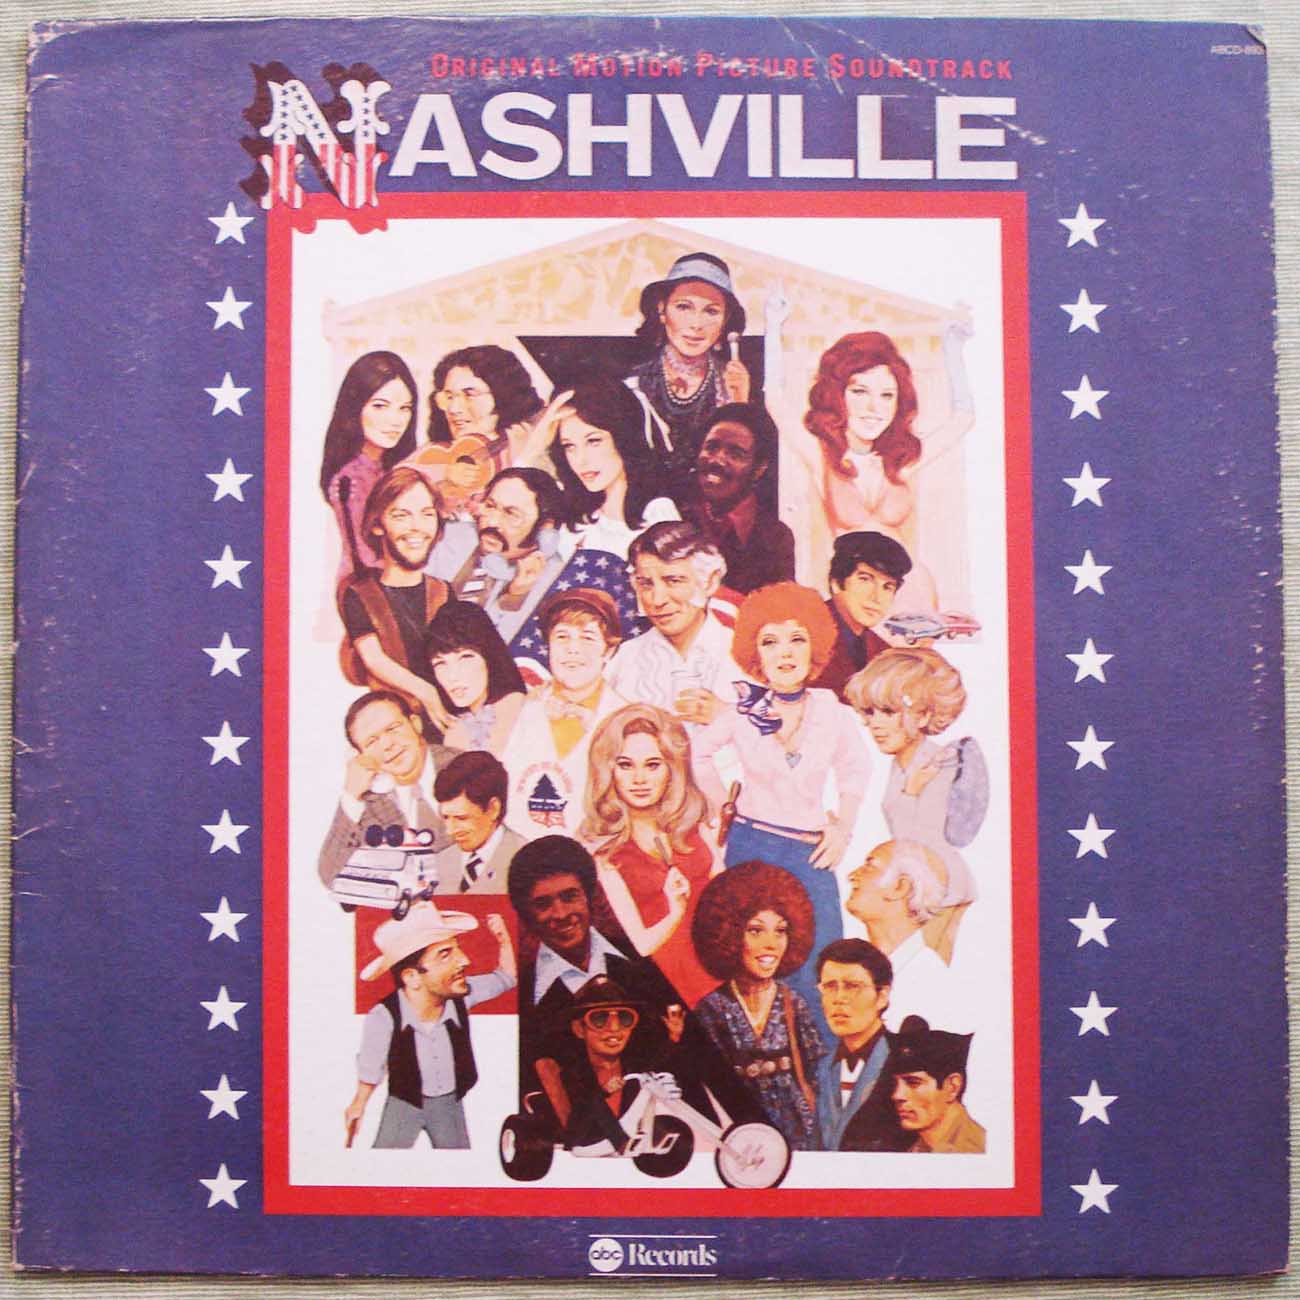 Nashville Motion Picture Soundrack (1975) Vinyl LP 33rpm ABCD-983